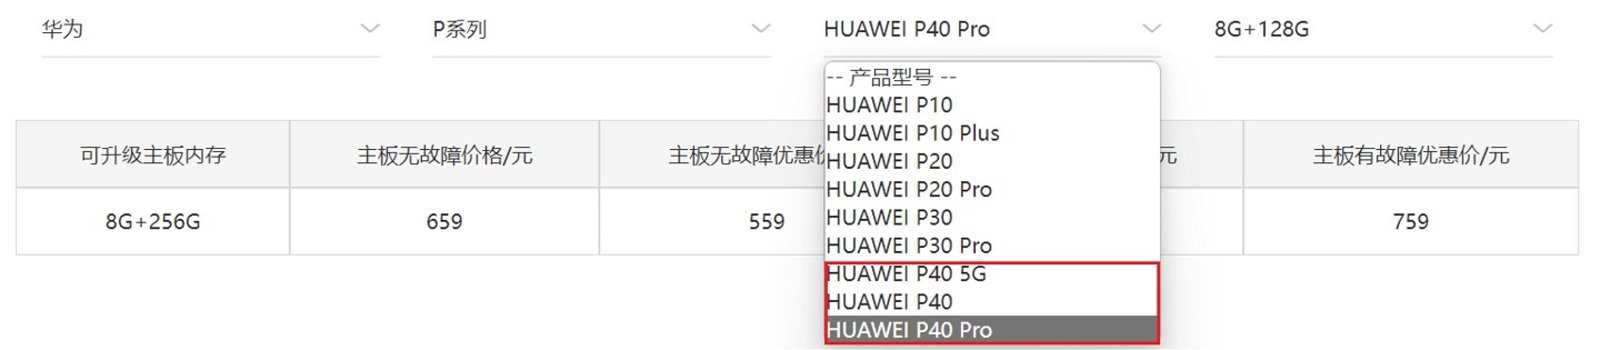 Programa de actualización de memoria de Huawei